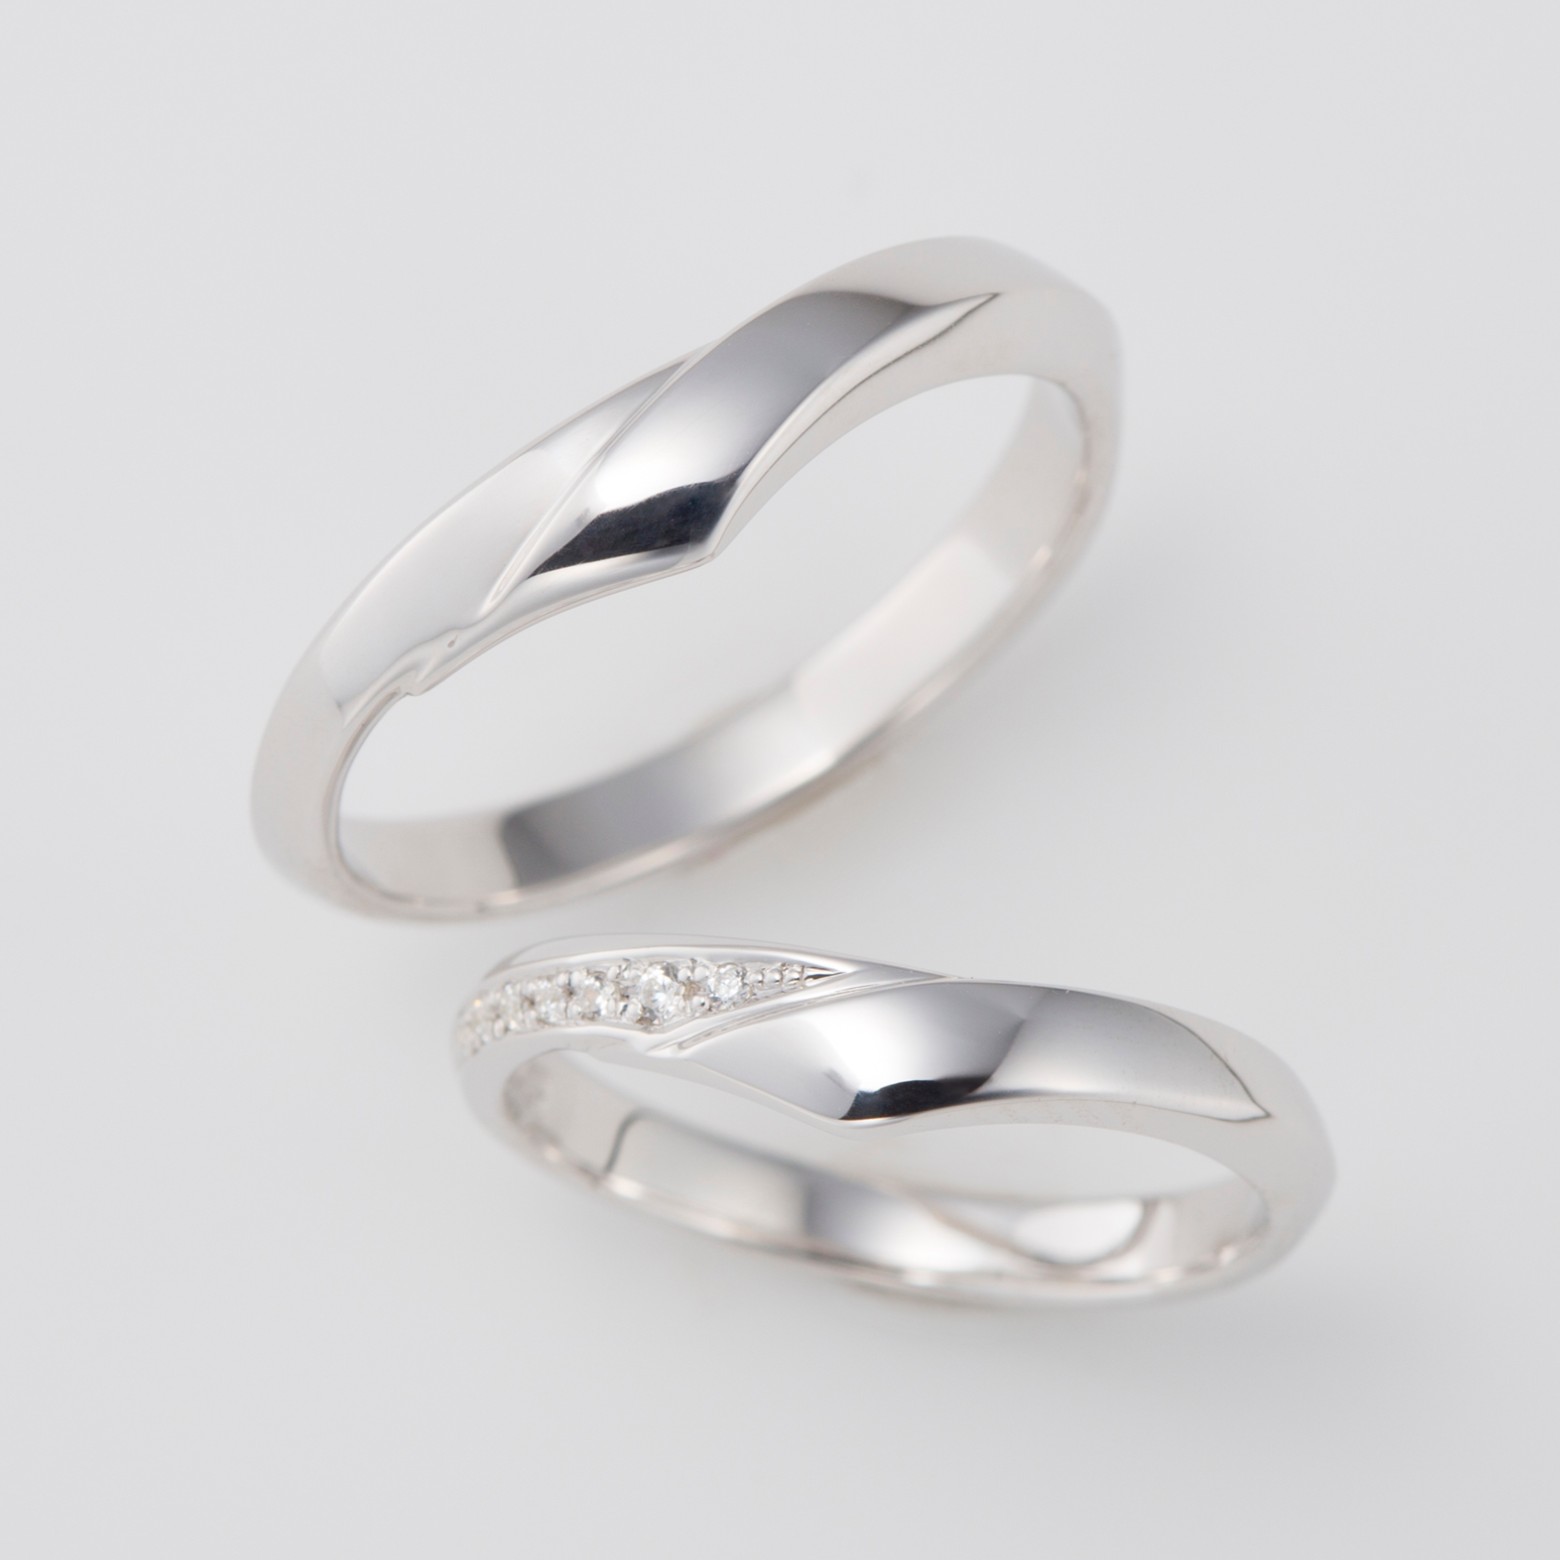 幅広のV字デザインの結婚指輪